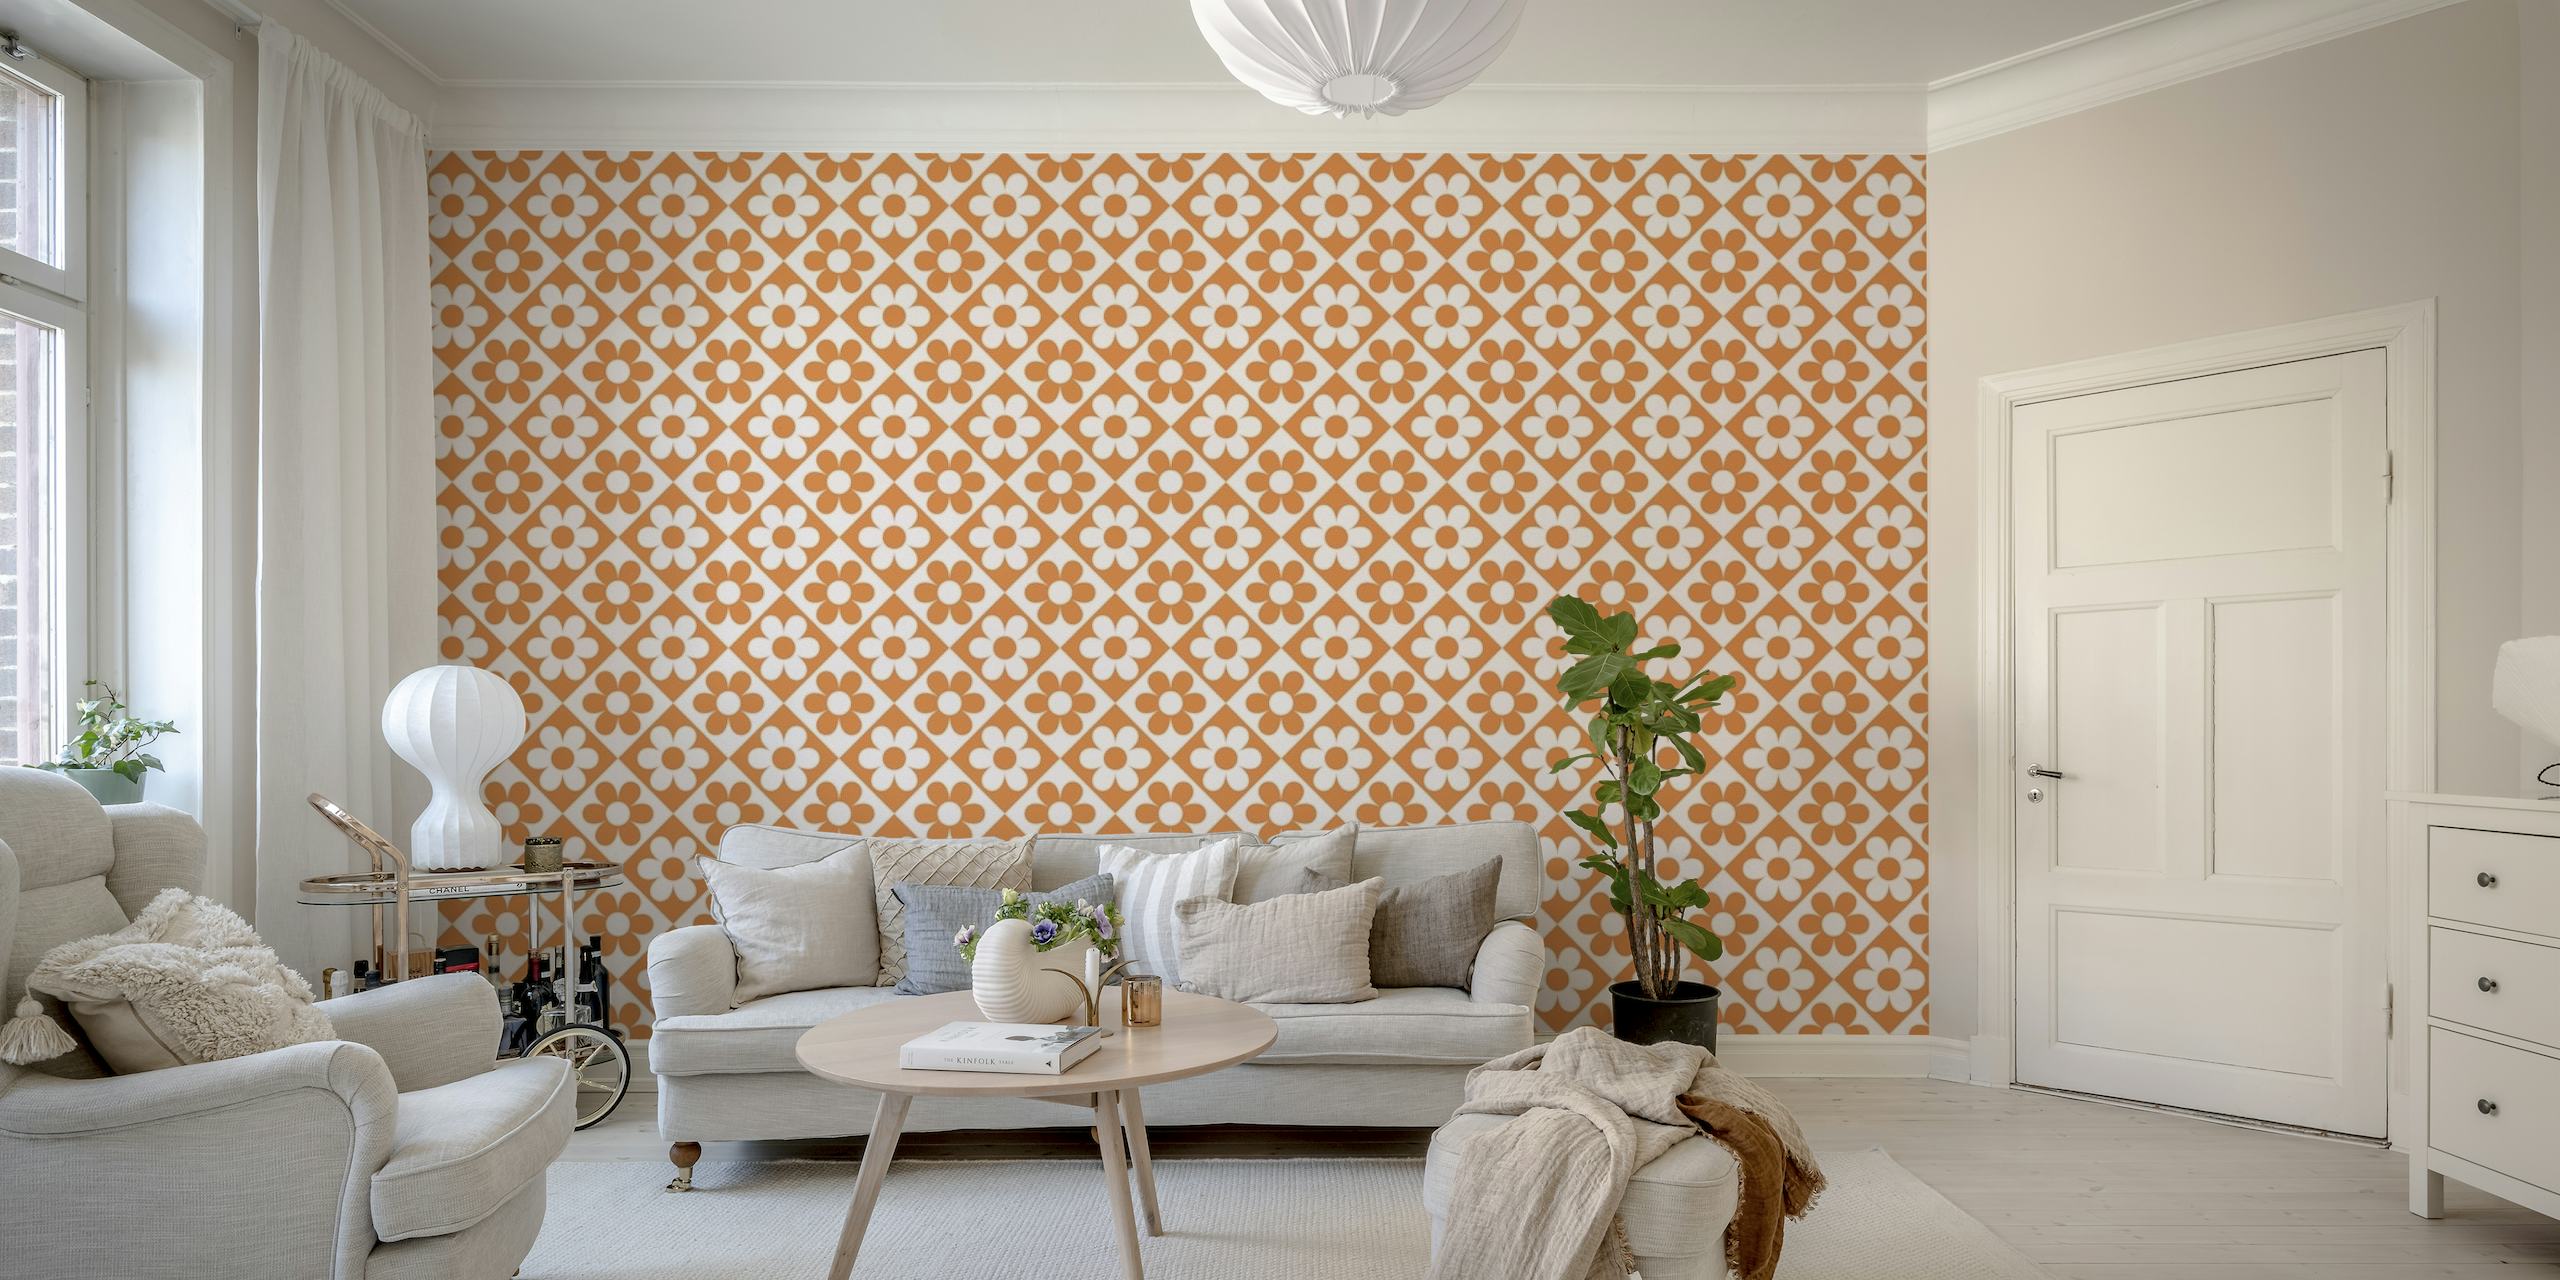 Fototapete mit orangefarbenen Blumen- und geometrischen Mustern